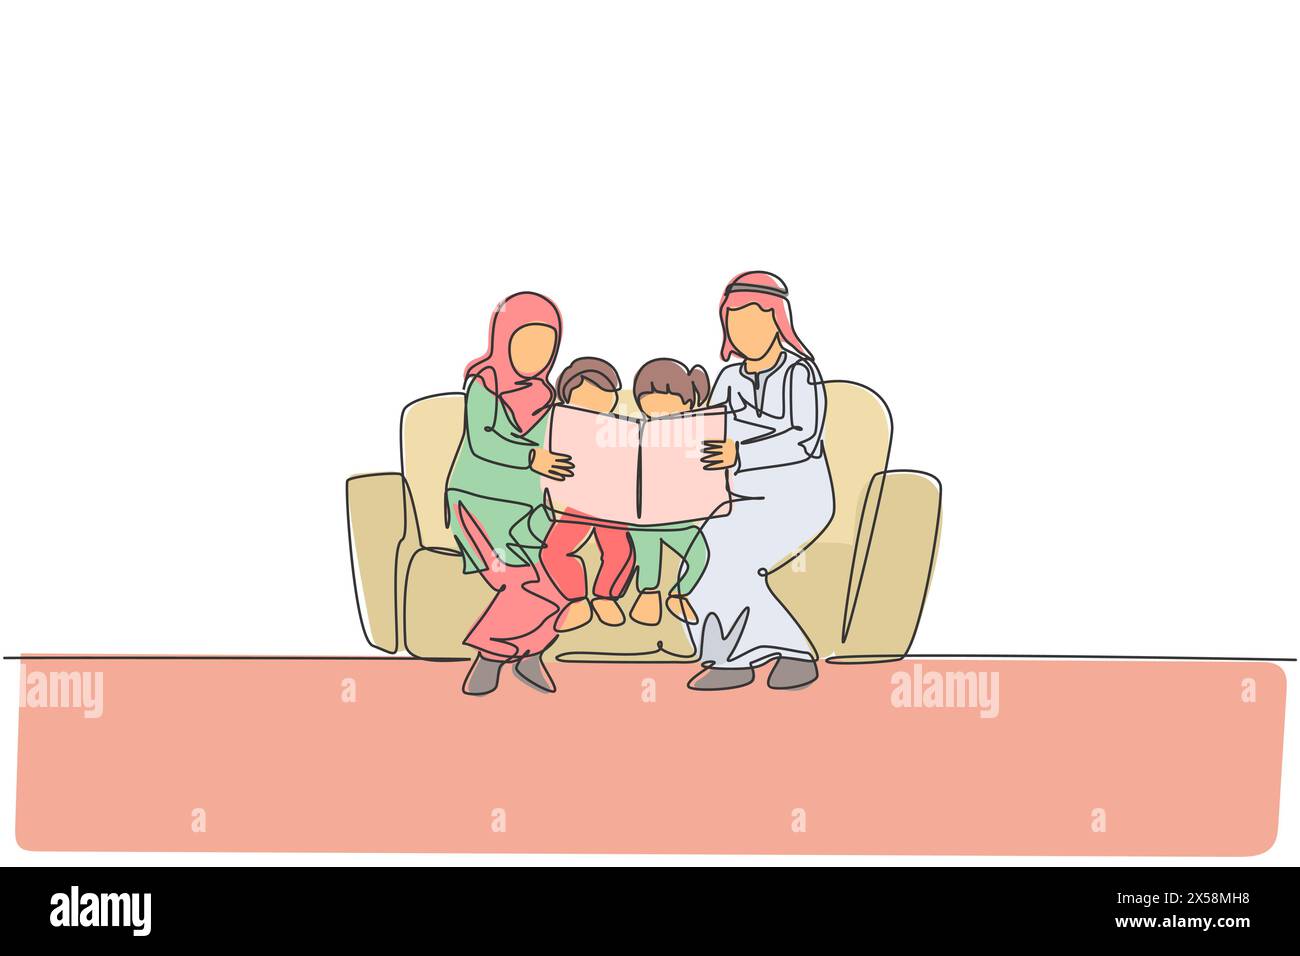 Disegno in linea singola continua di una giovane famiglia araba seduta sul divano a leggere un libro. Concetto di famiglia felice musulmana islamica. Alla moda Illustrazione Vettoriale